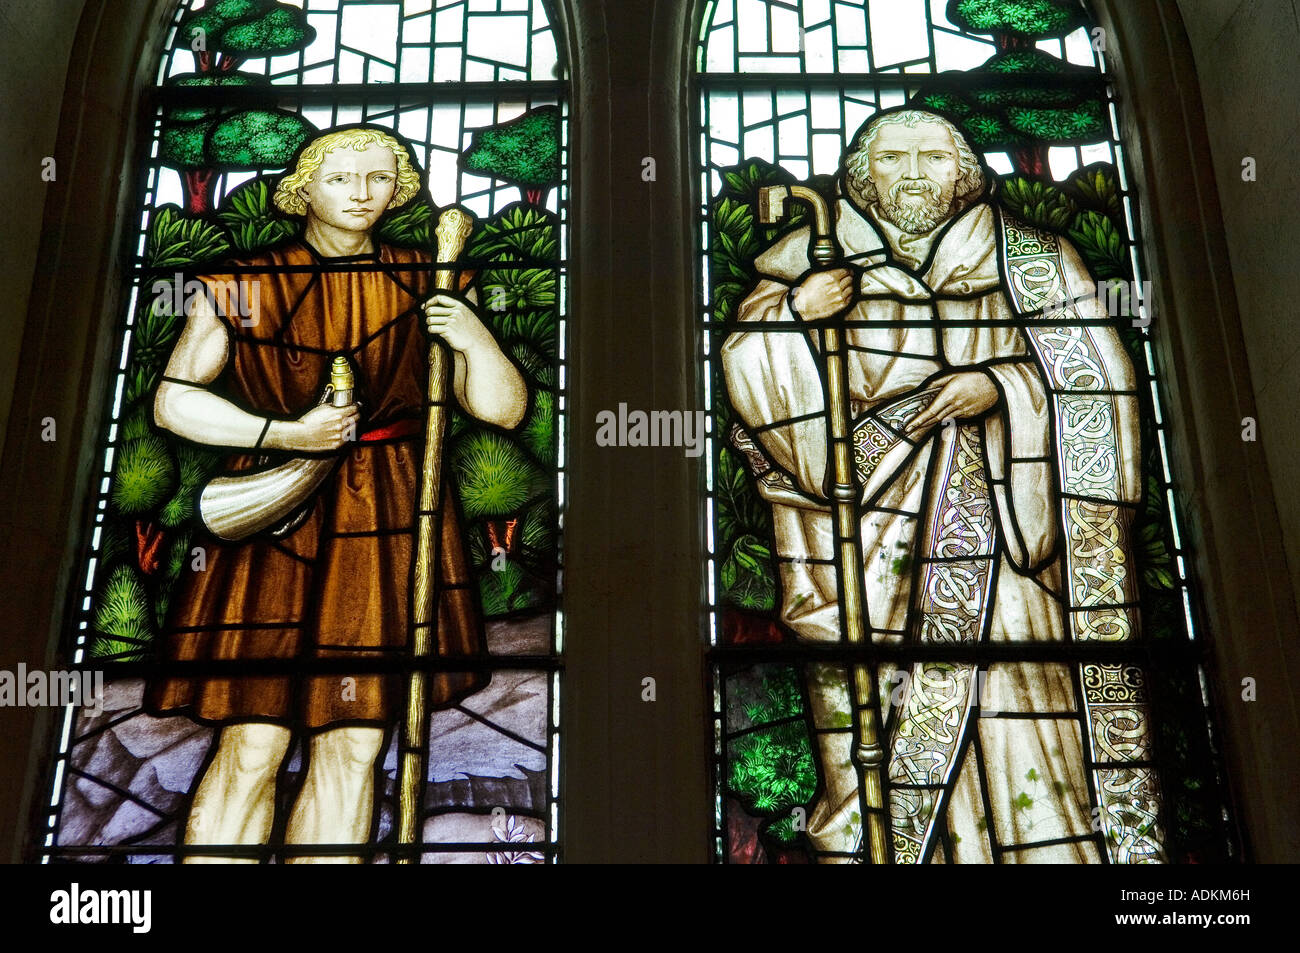 L'église de l'Irlande vers le bas, la cathédrale de Downpatrick. Fenêtre montrant Saint Patrick en tant que jeune esclave pasteur et missionnaire chrétien Banque D'Images